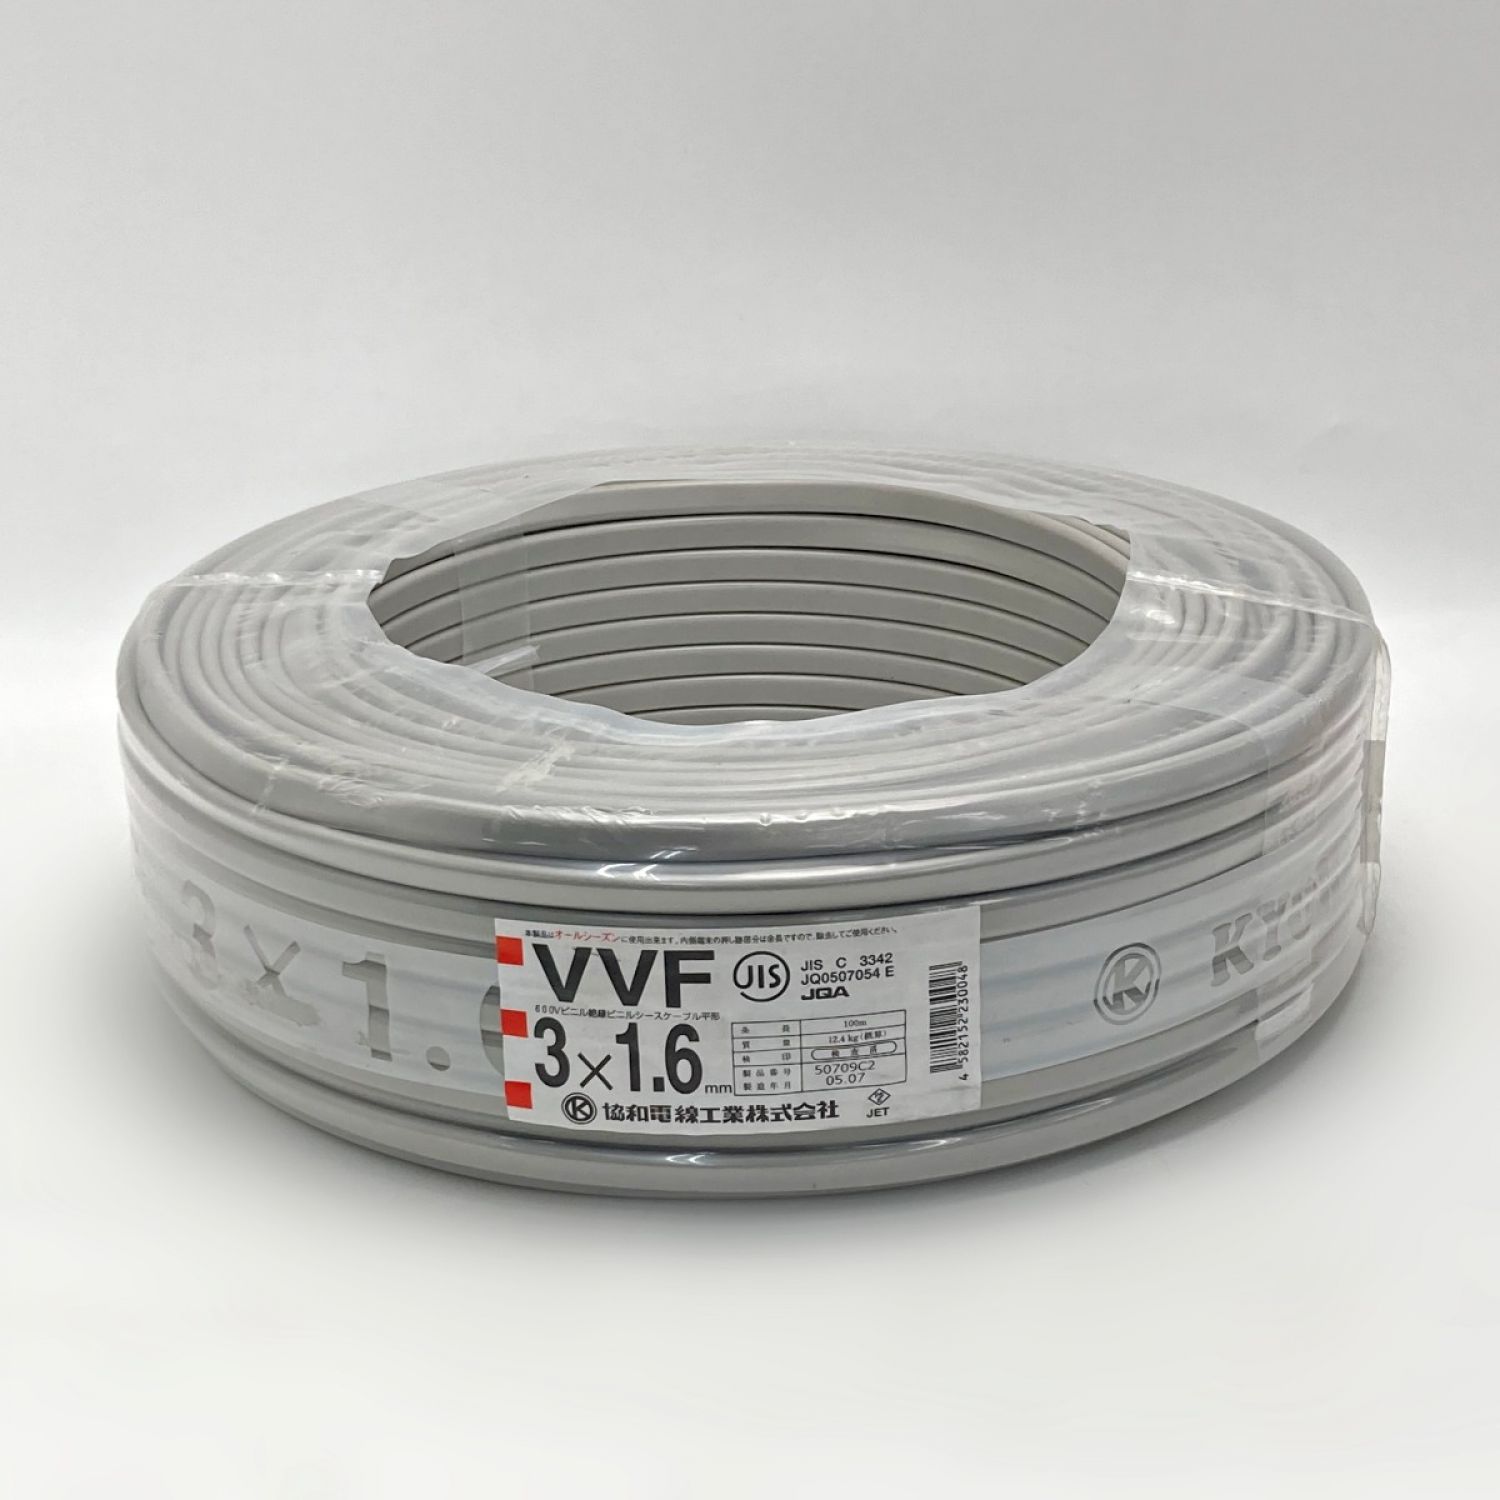 協和 《 VVFケーブル 平形 》100m巻 / 灰色 / VVF3×1.6 / 50709C2 Nランク